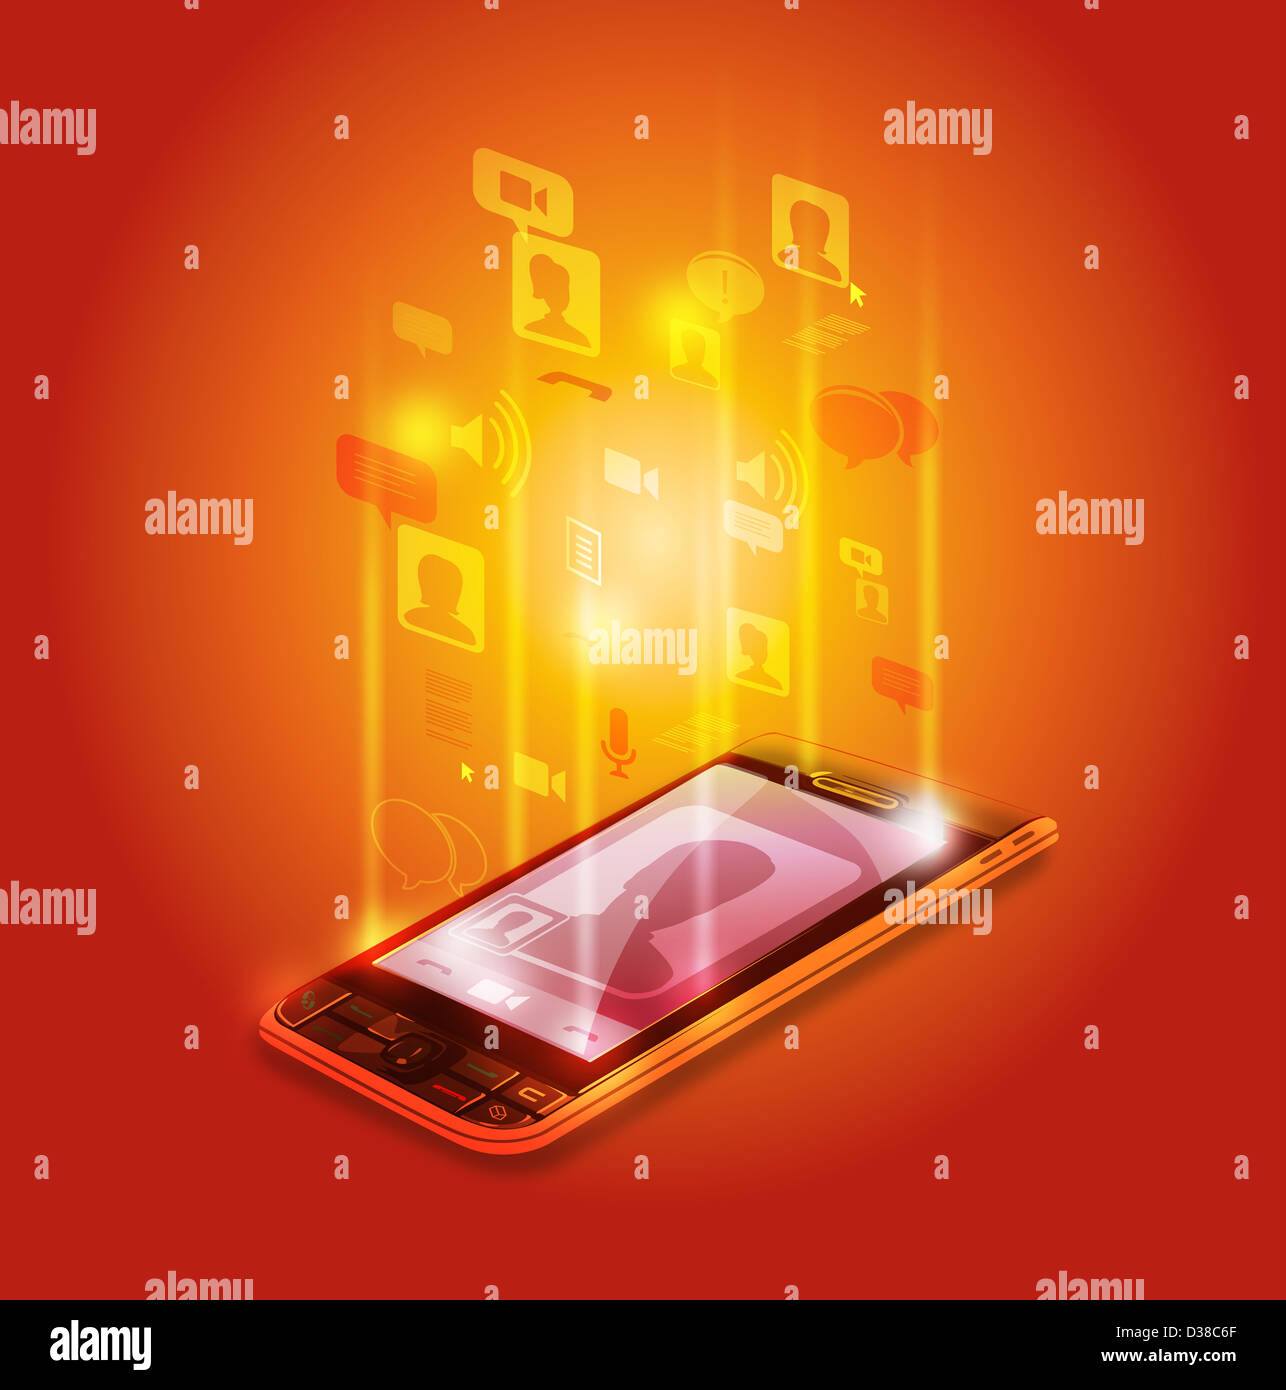 Image d'illustration de téléphone mobile qui représente la communication sociale Banque D'Images